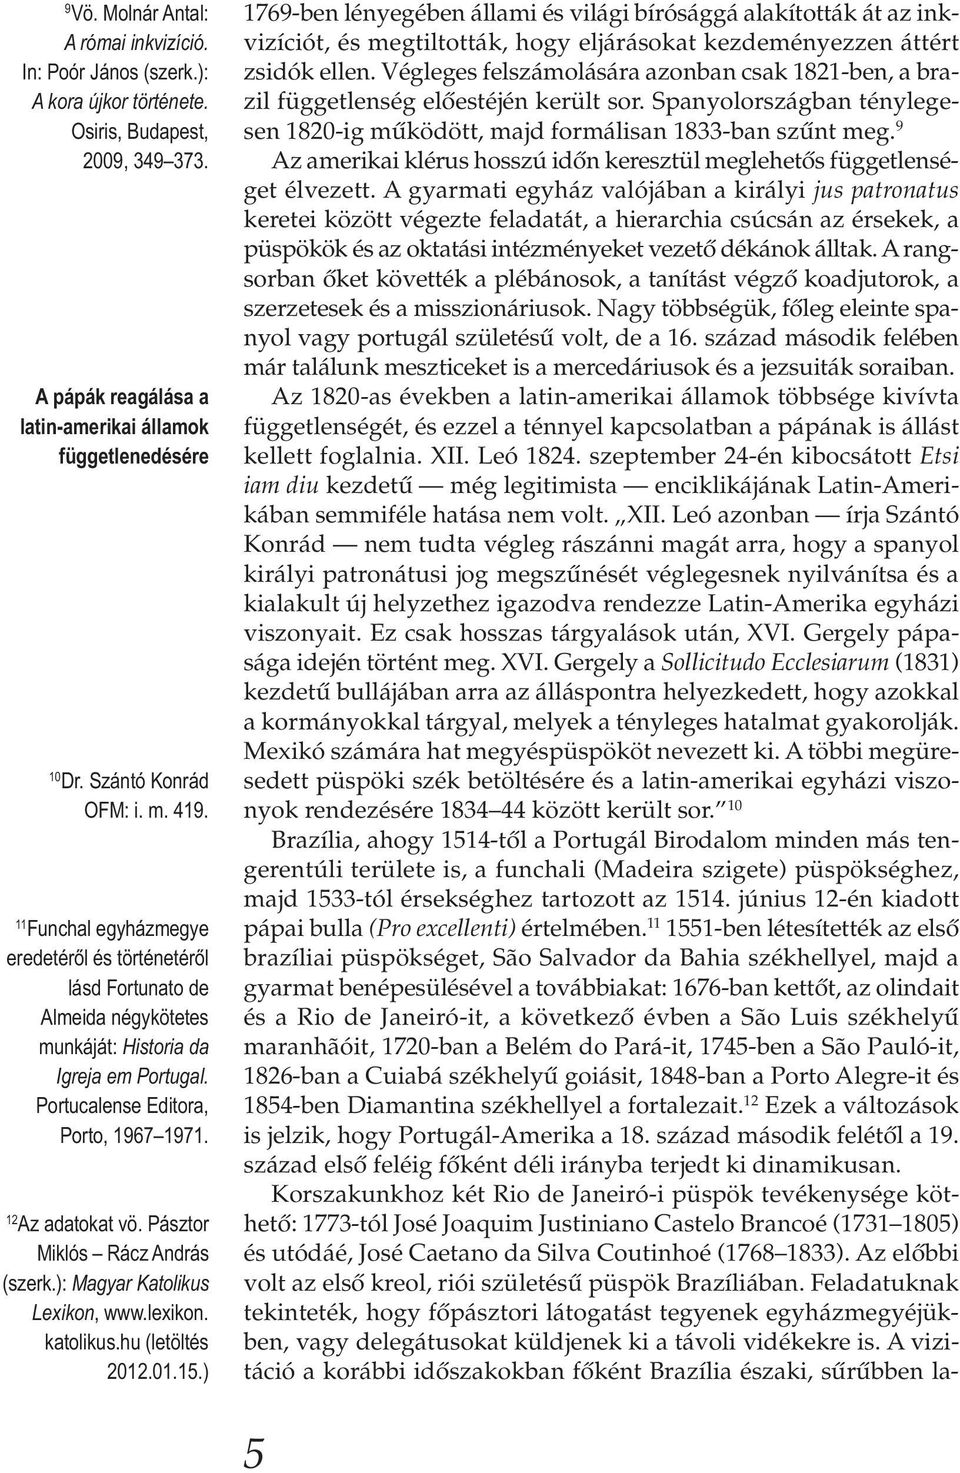 12 Az adatokat vö. Pásztor Miklós Rácz András (szerk.): Magyar Katolikus Lexikon, www.lexikon. katolikus.hu (letöltés 2012.01.15.